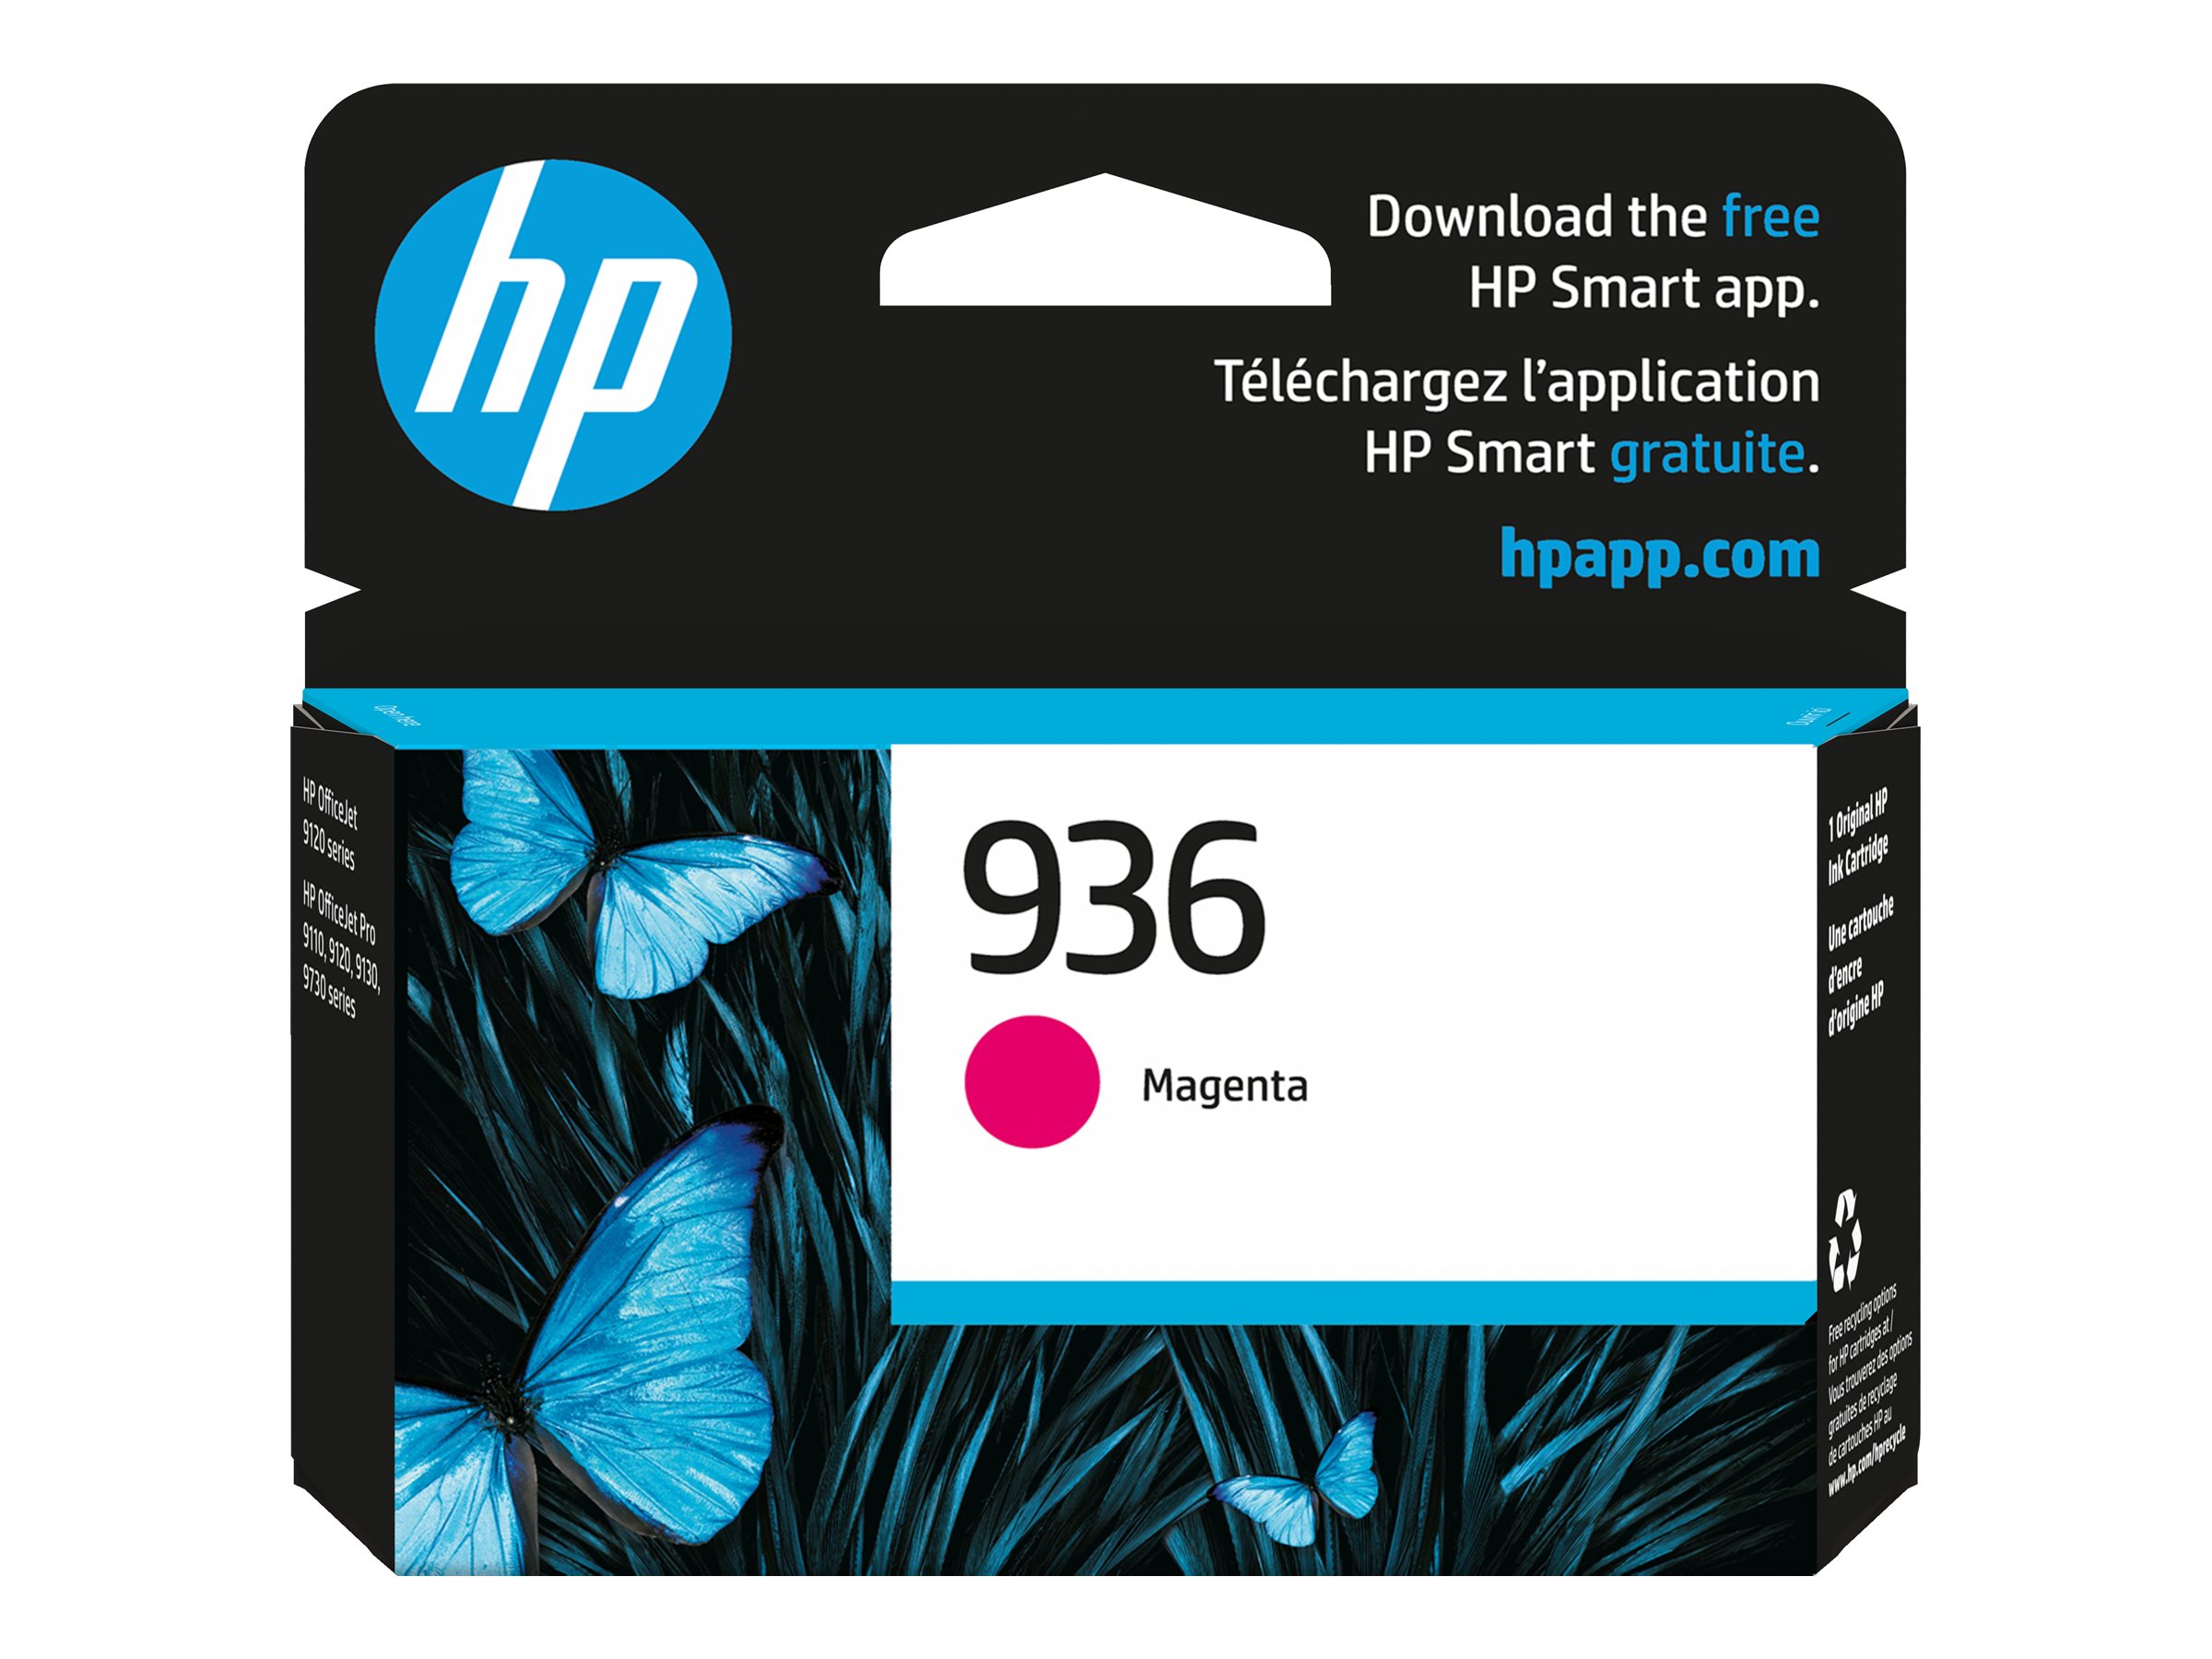 HP Officejet Pro 8718 Ink Cartridges